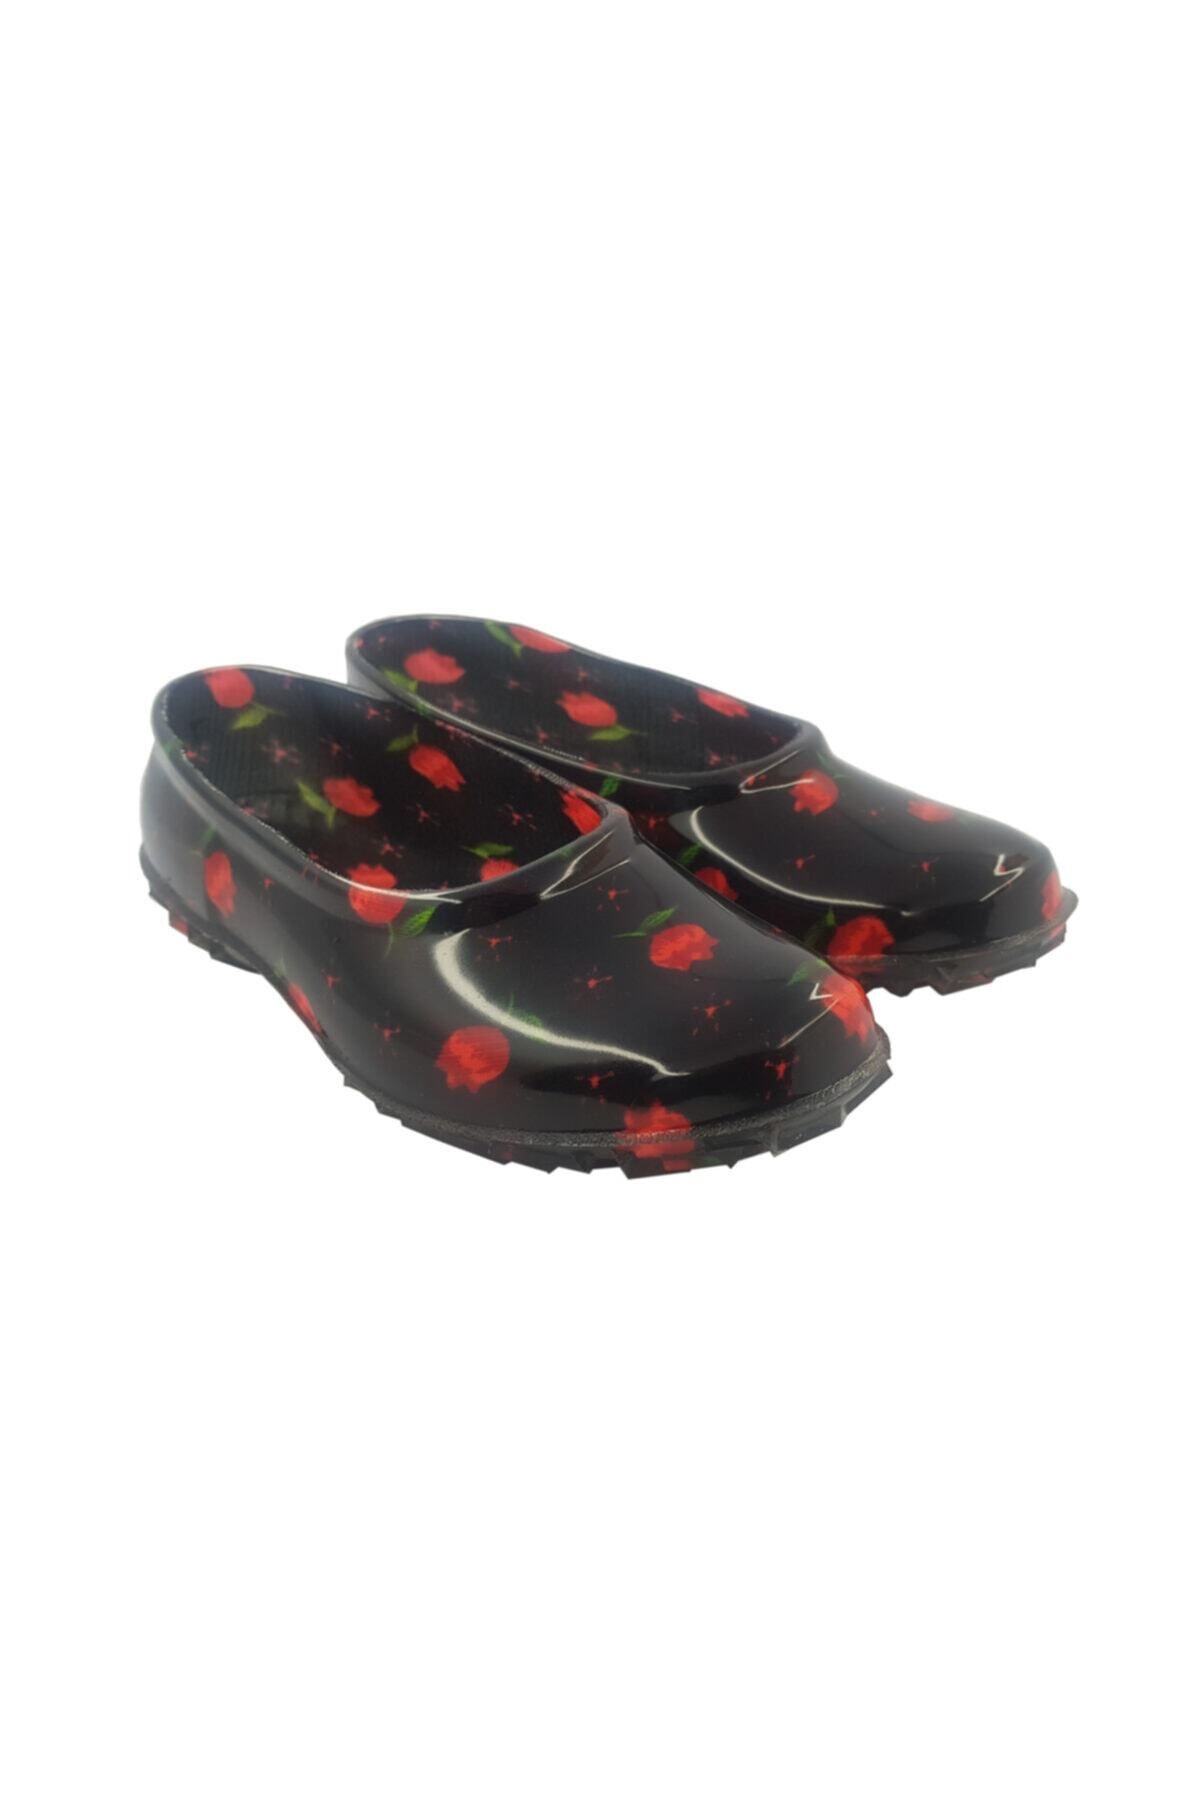 fafatara Kadın Kırmızı Çiçekli Lastik Ayakkabı